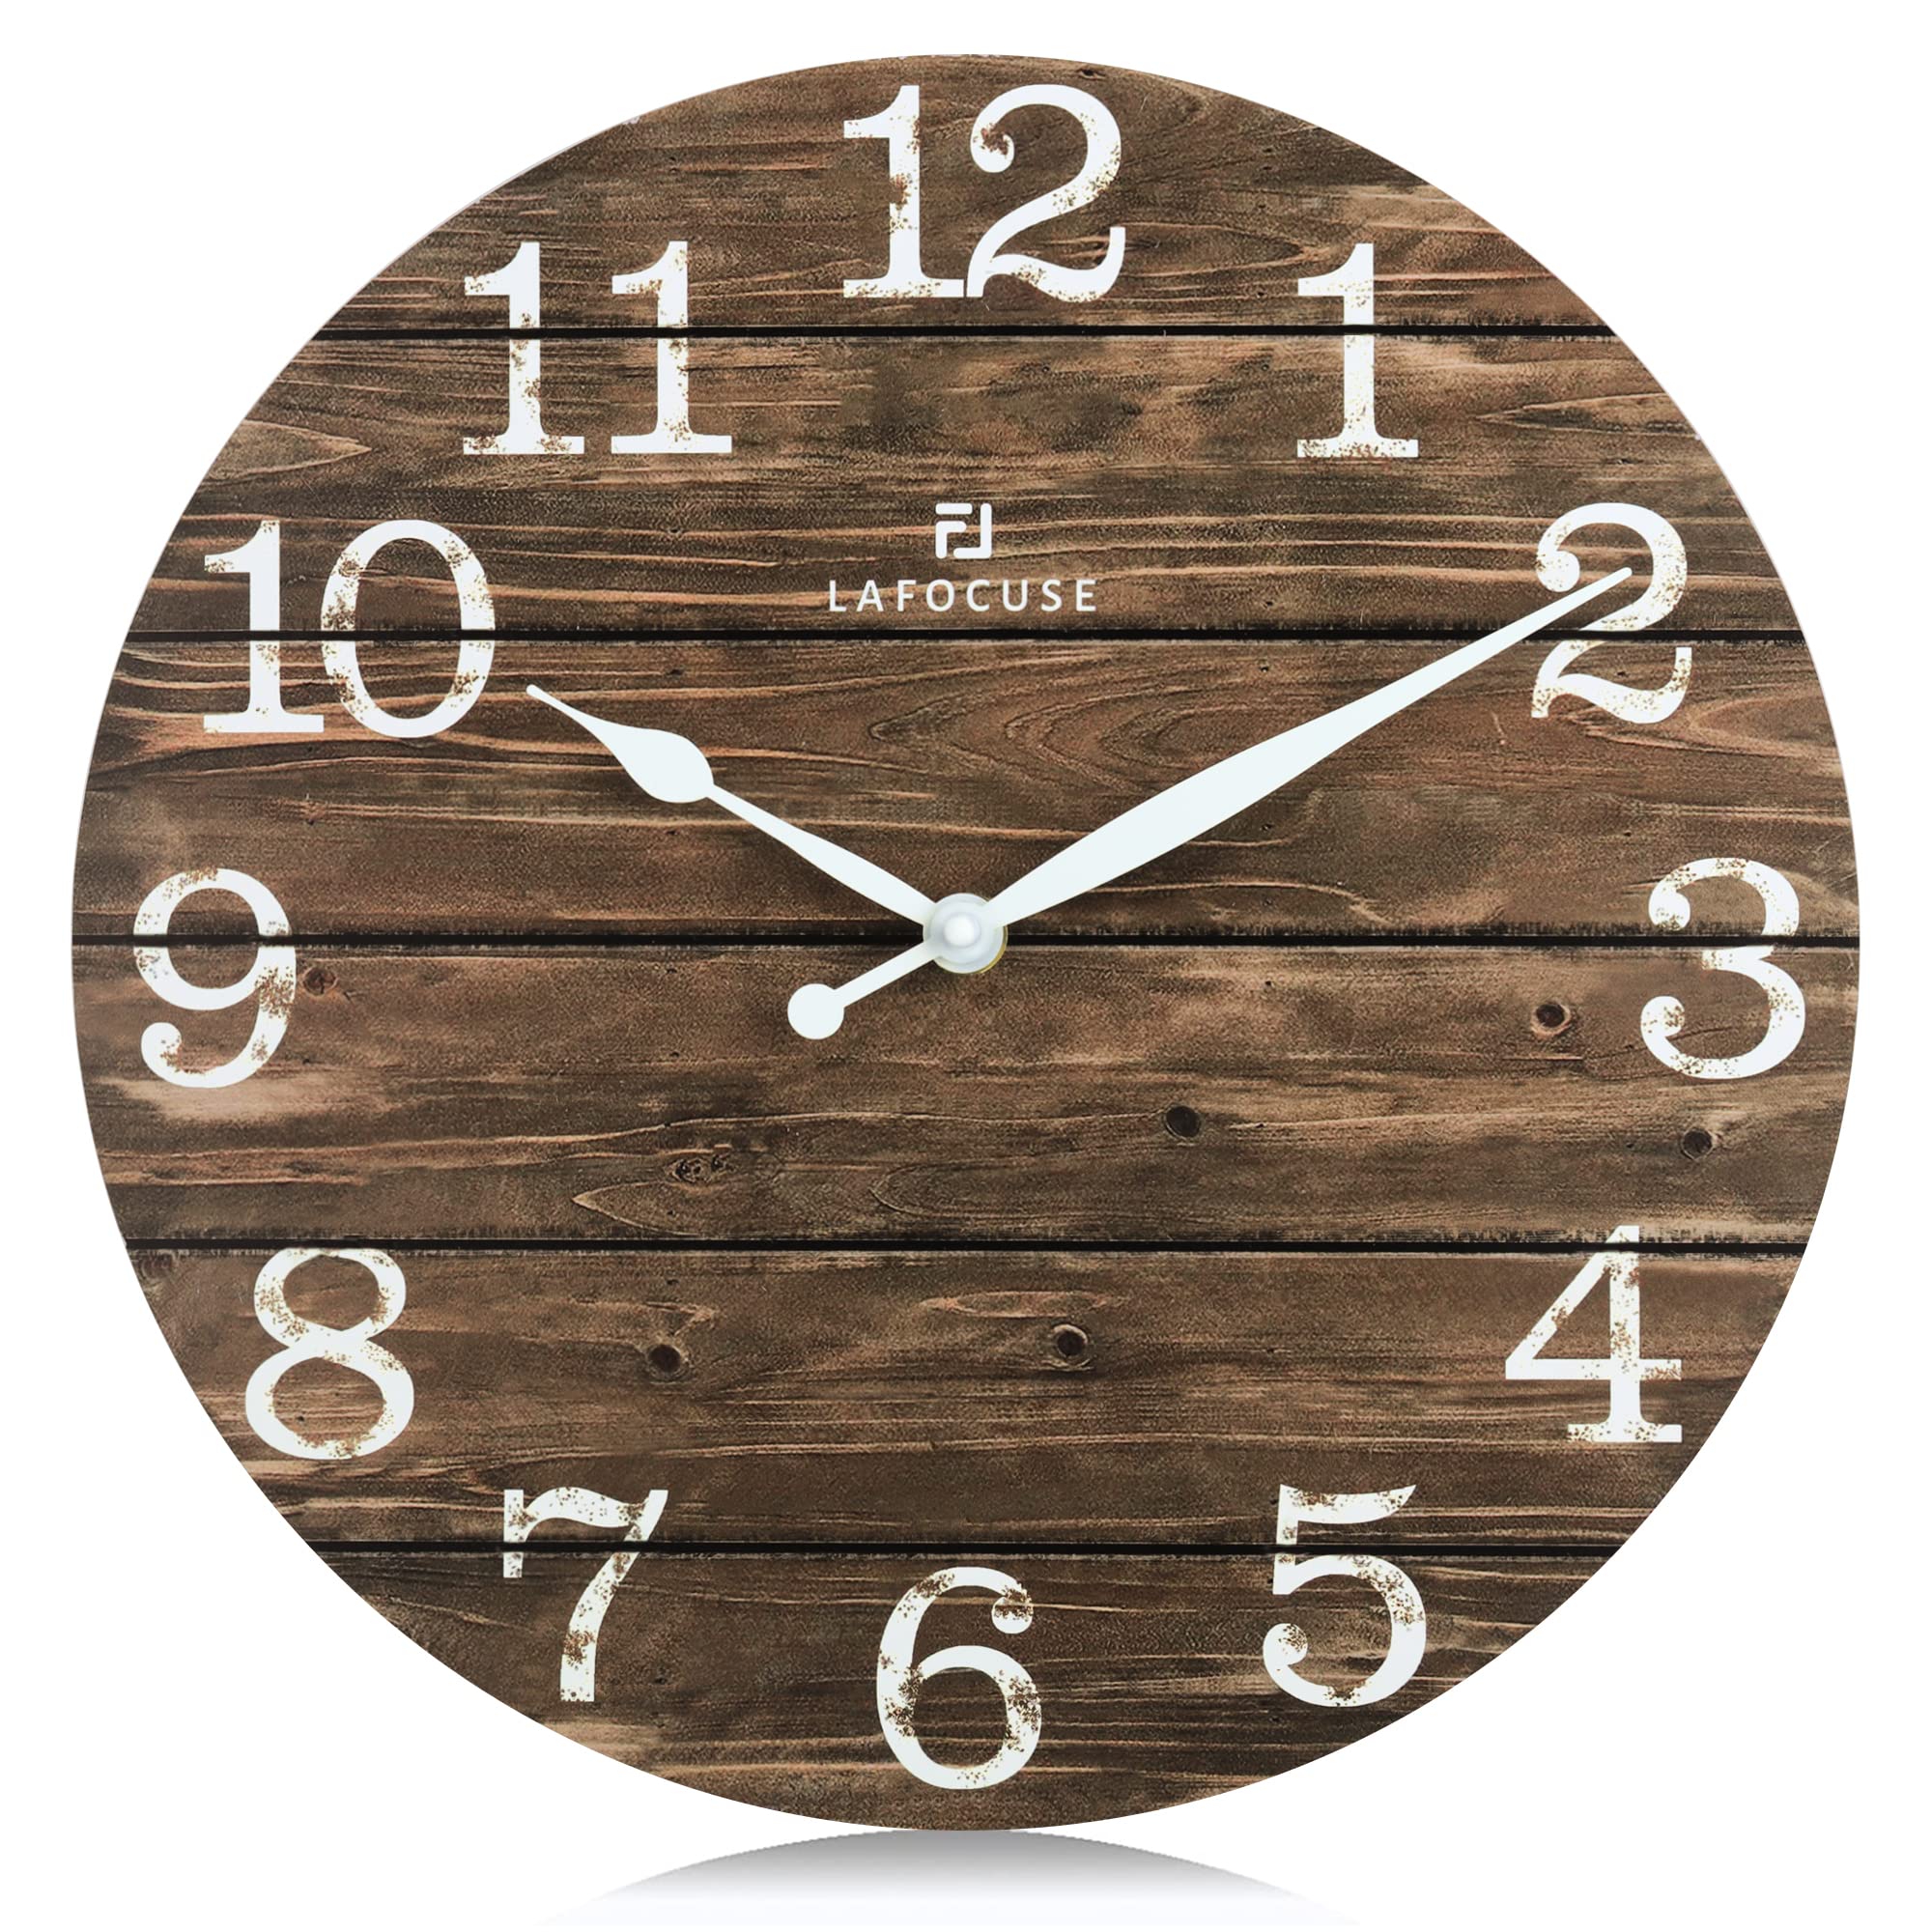 Lafocuse Farmhouse Clock